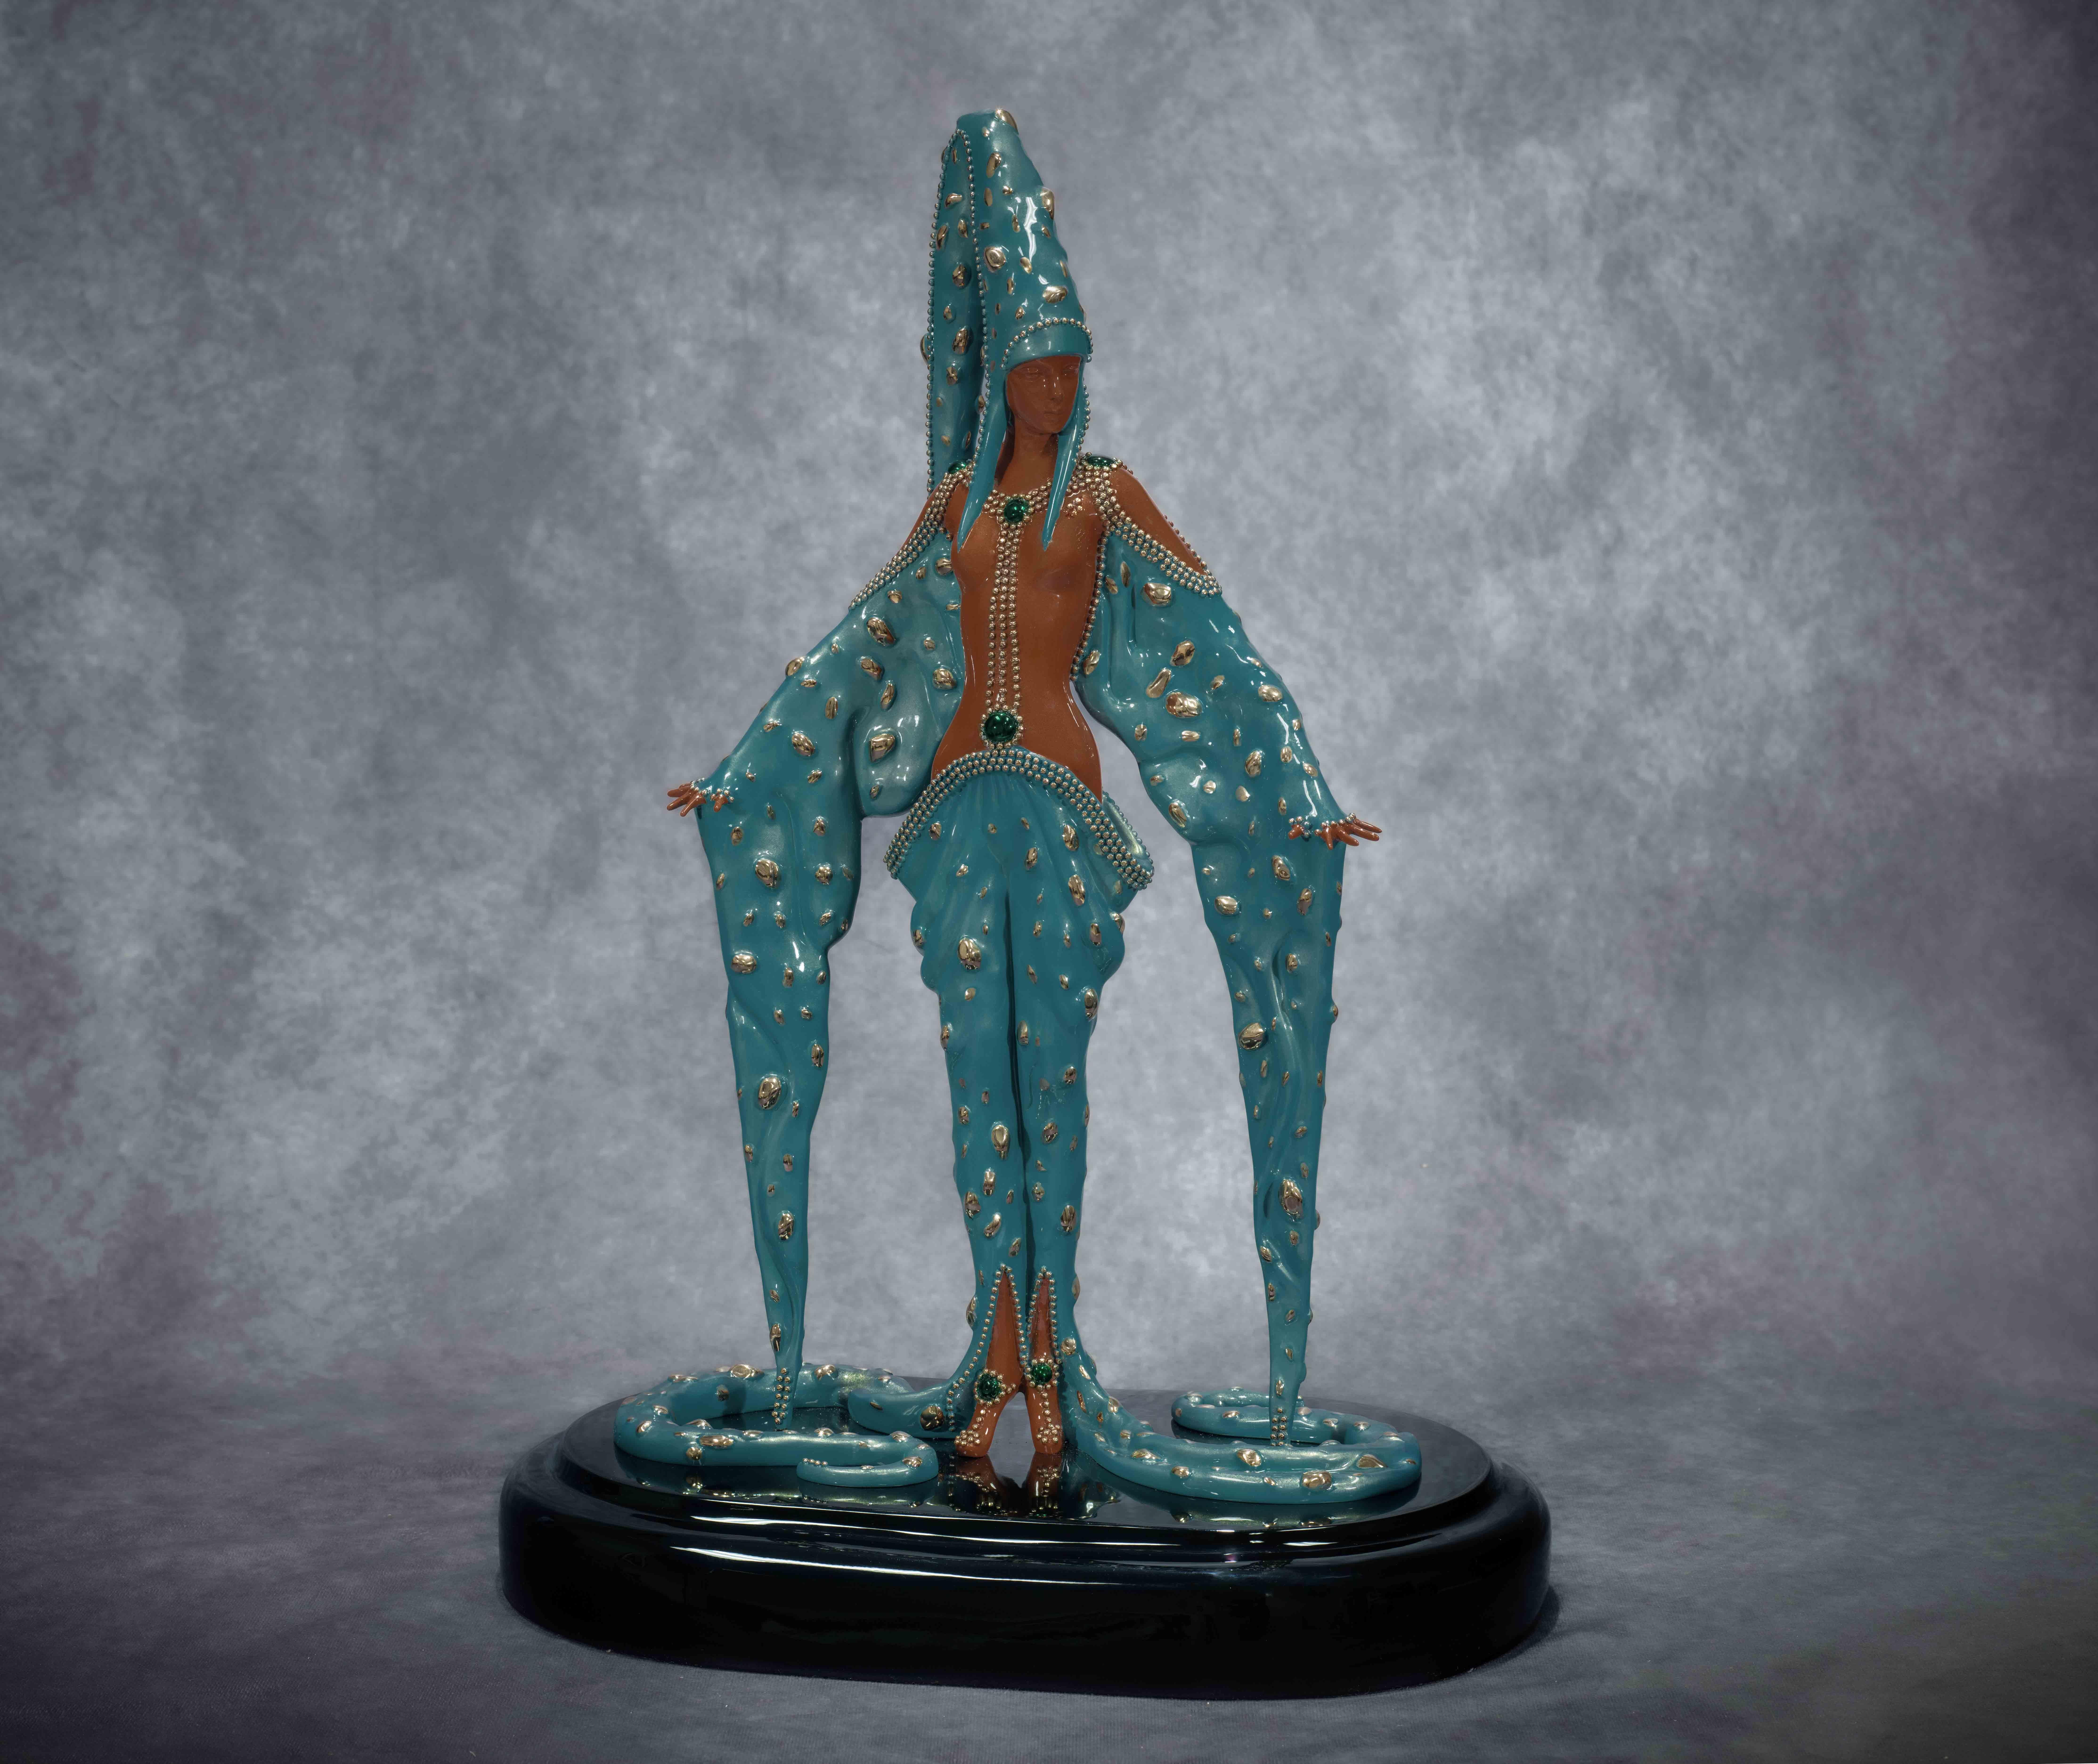 Erté Figurative Sculpture - Starfish